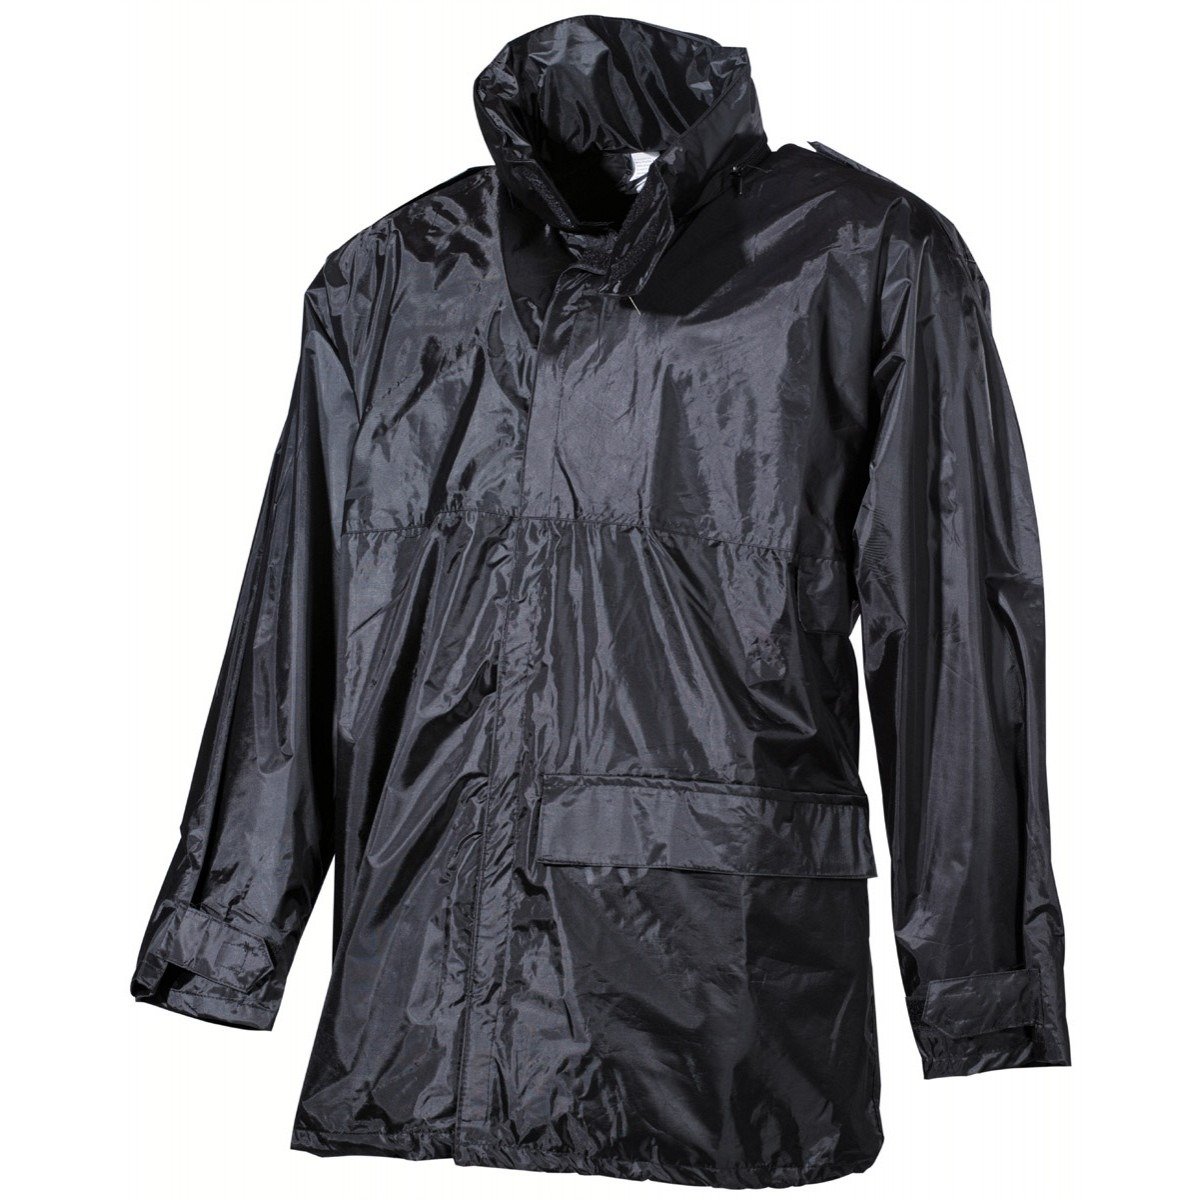 MFH waterproof jacket to rain PVC black | Apparel \ Wet Weather Wear ...